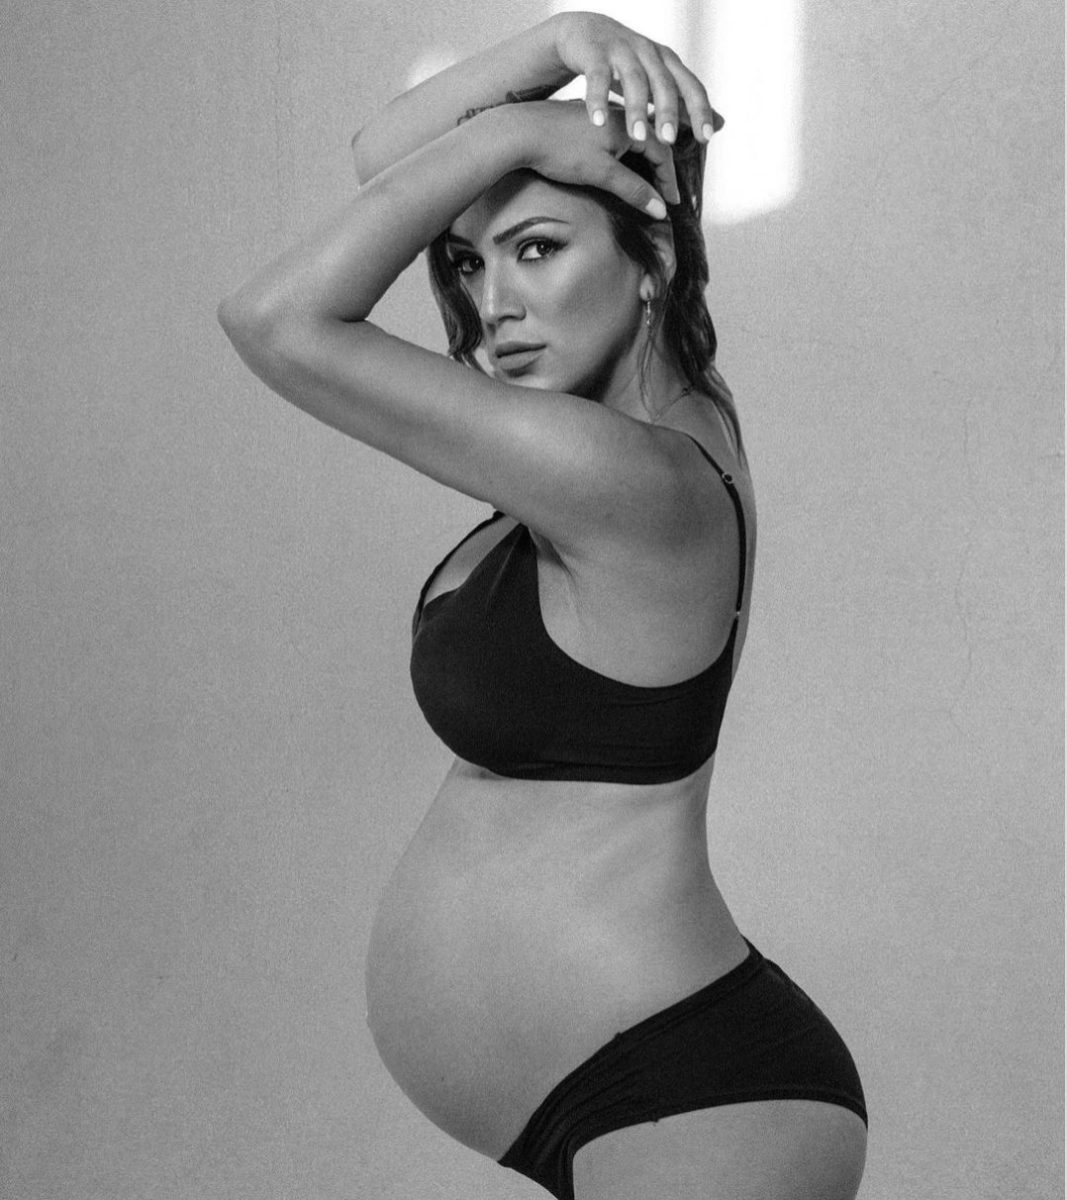 Βασιλική Νταντά: Θα γίνει πρώτη φορά μαμά! Η φωτογραφία της τραγουδίστριας σε προχωρημένη εγκυμοσύνη